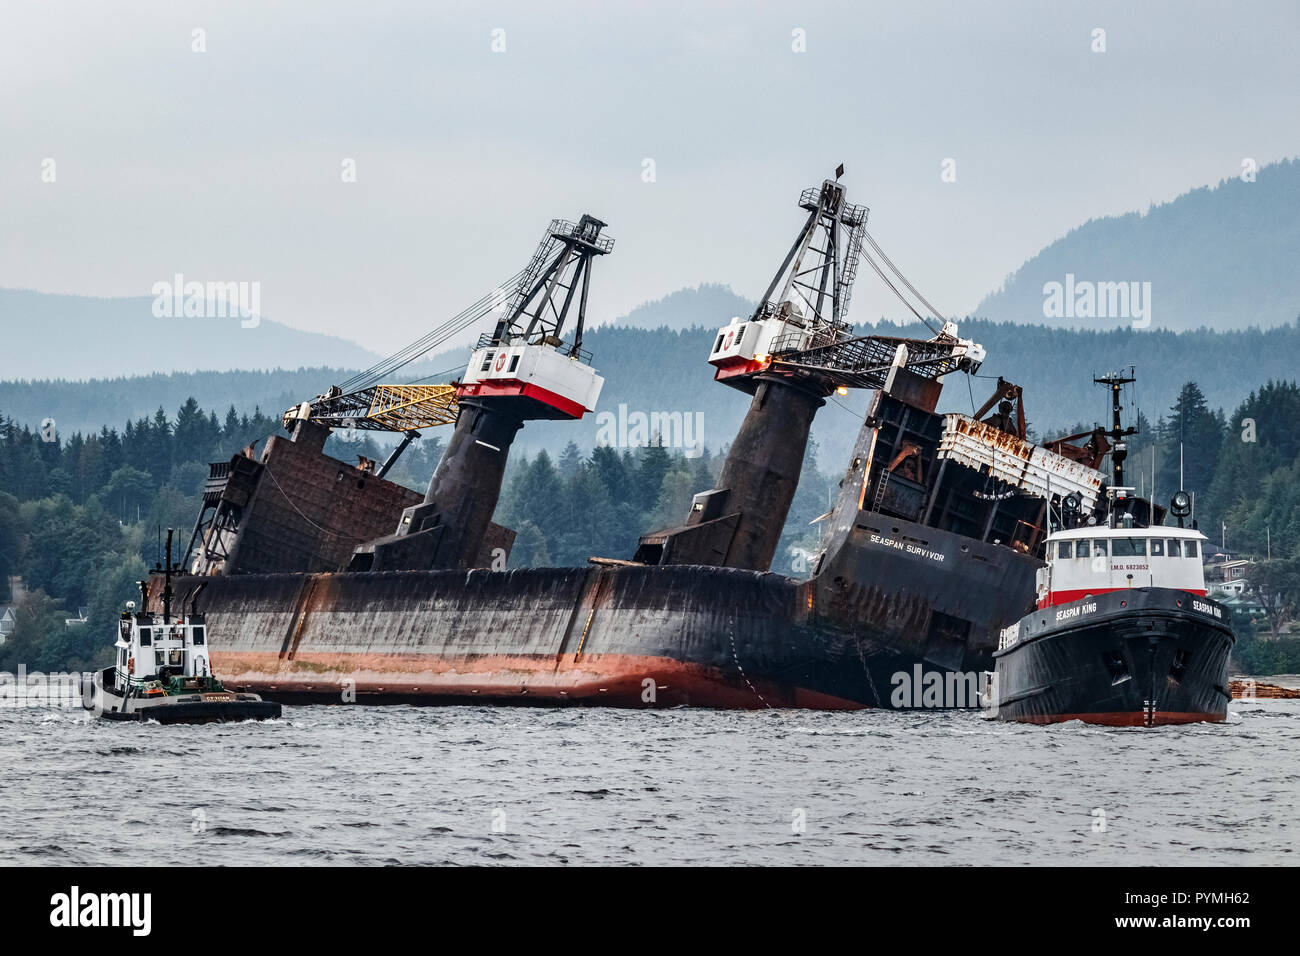 Después de volcar su carga, el auto-registro de dumping barcaza Seaspan superviviente, aún más tacón, es atendido por los remolcadores C.T Seaspan Rey y Titan. Foto de stock